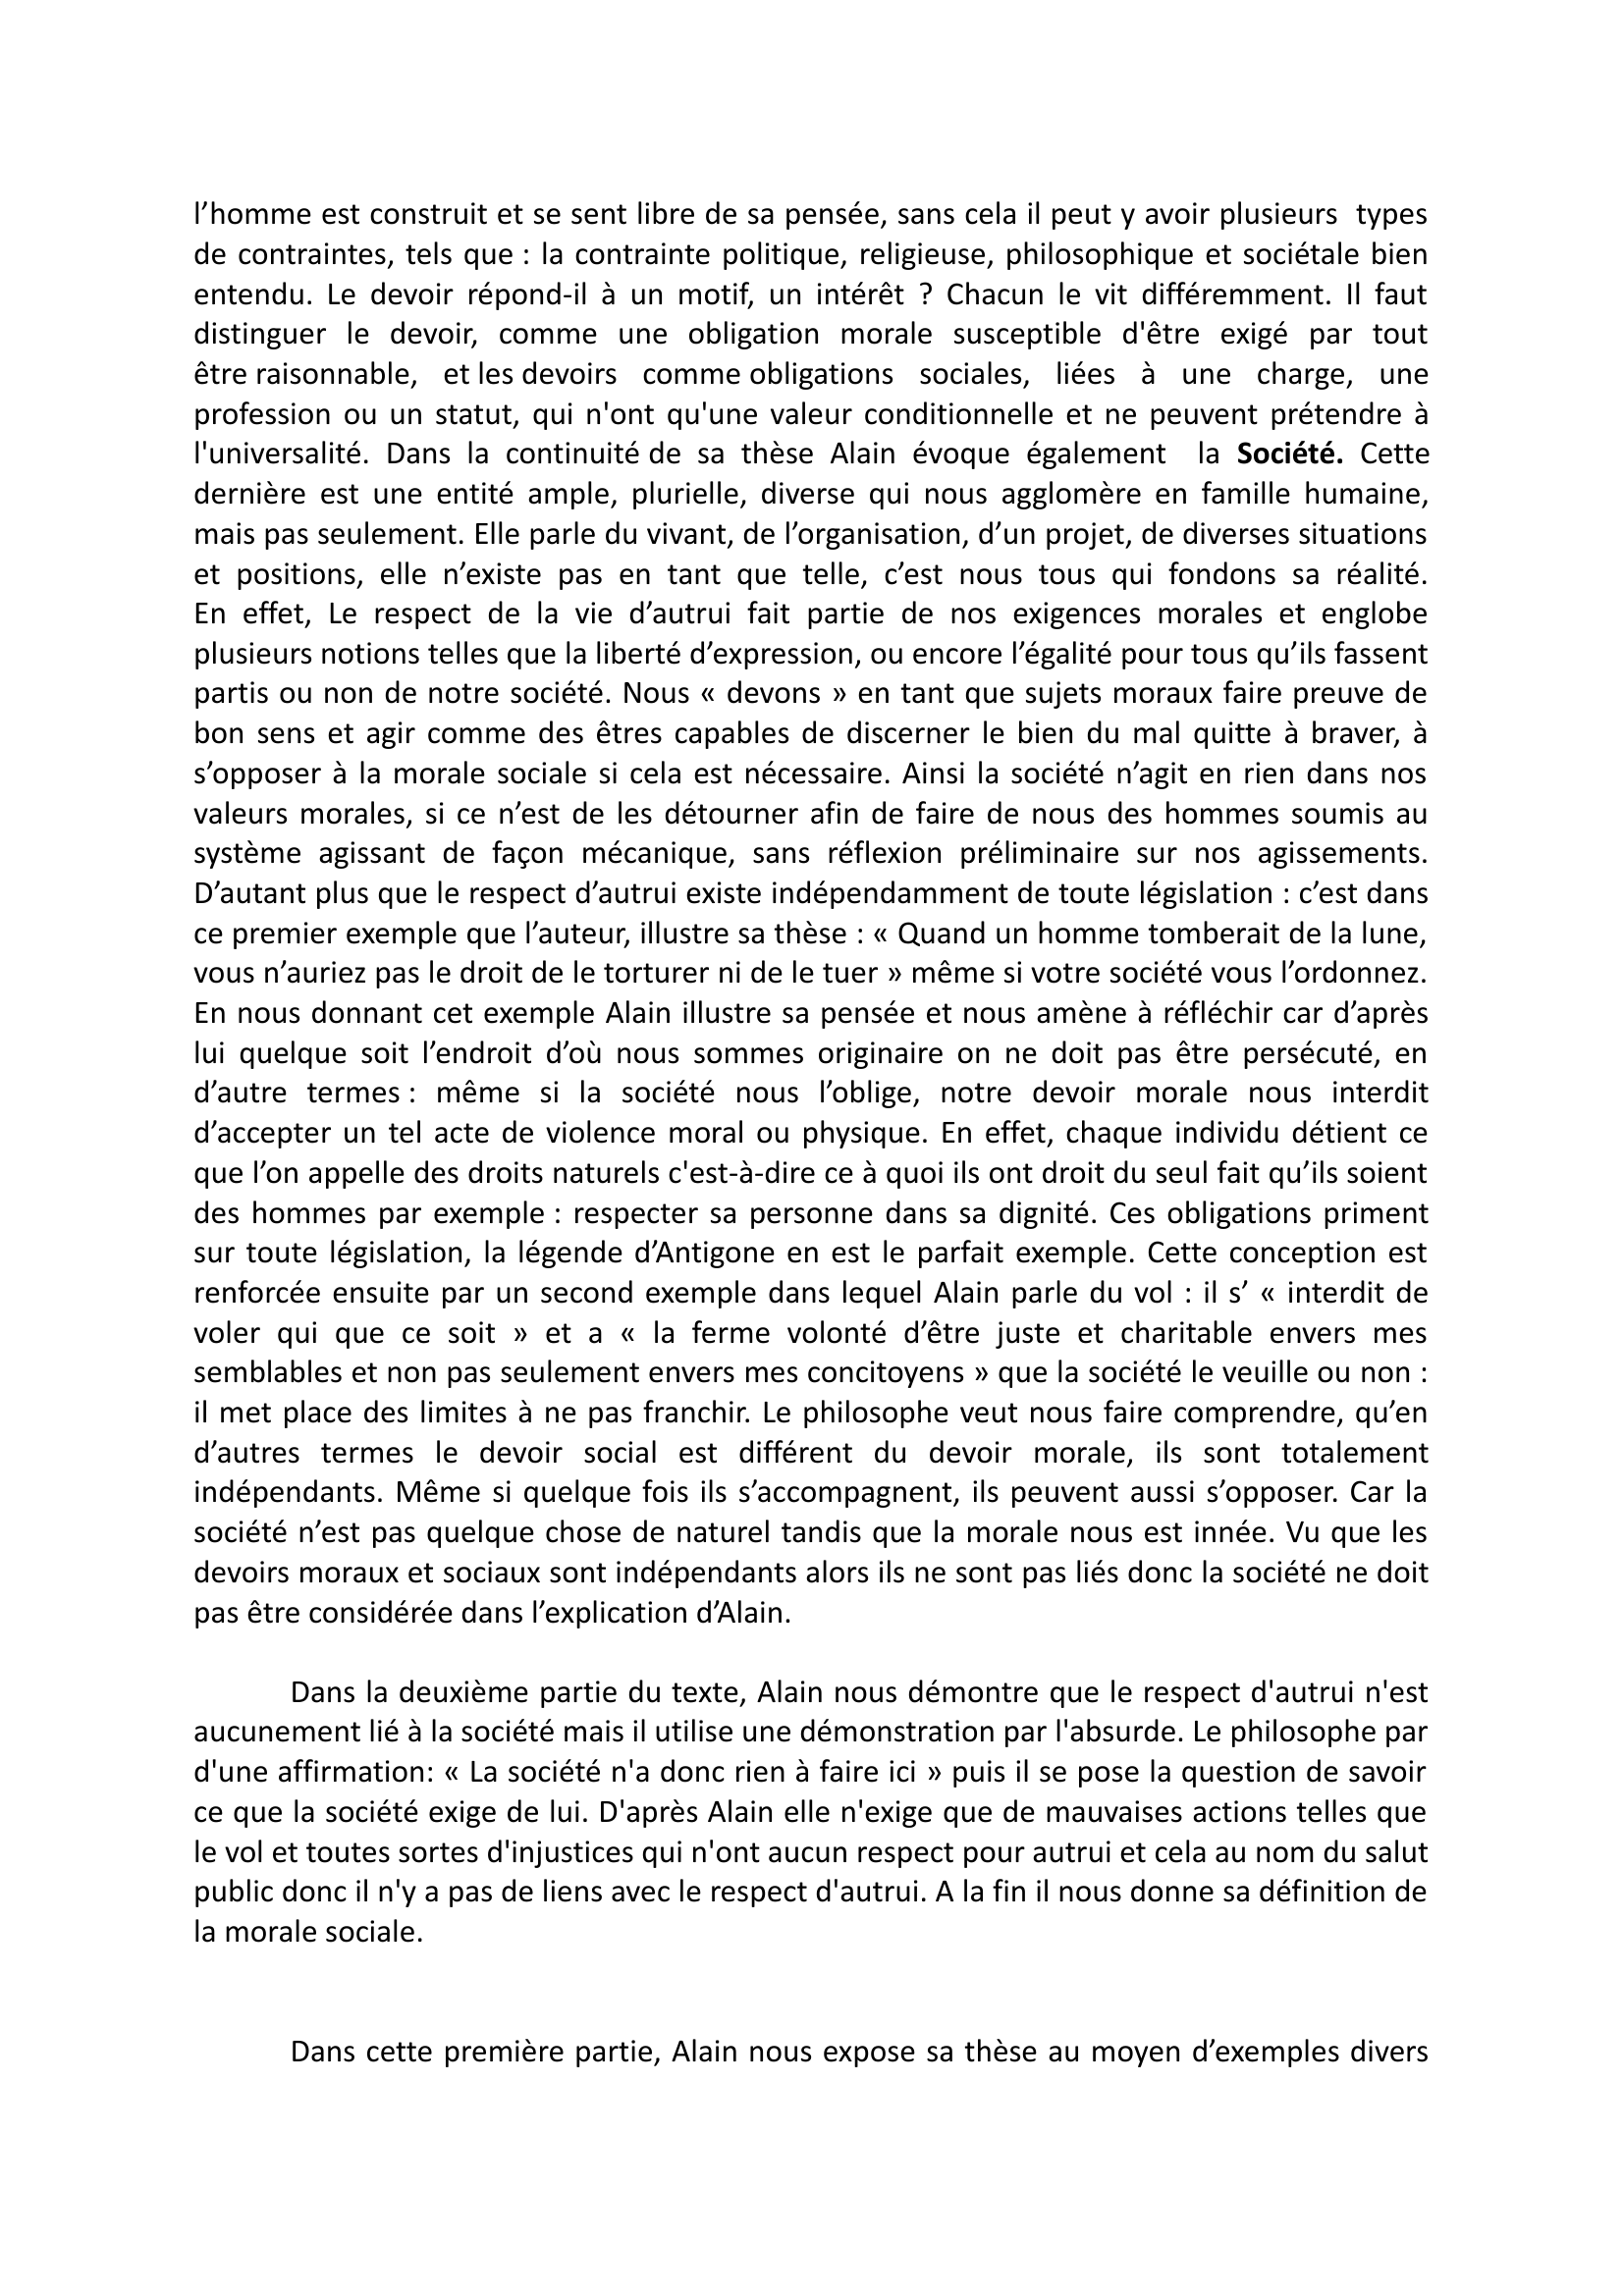 Prévisualisation du document « Propos d’un Normand »  d’Emile-Auguste Chartier dit Alain - Explication de texte